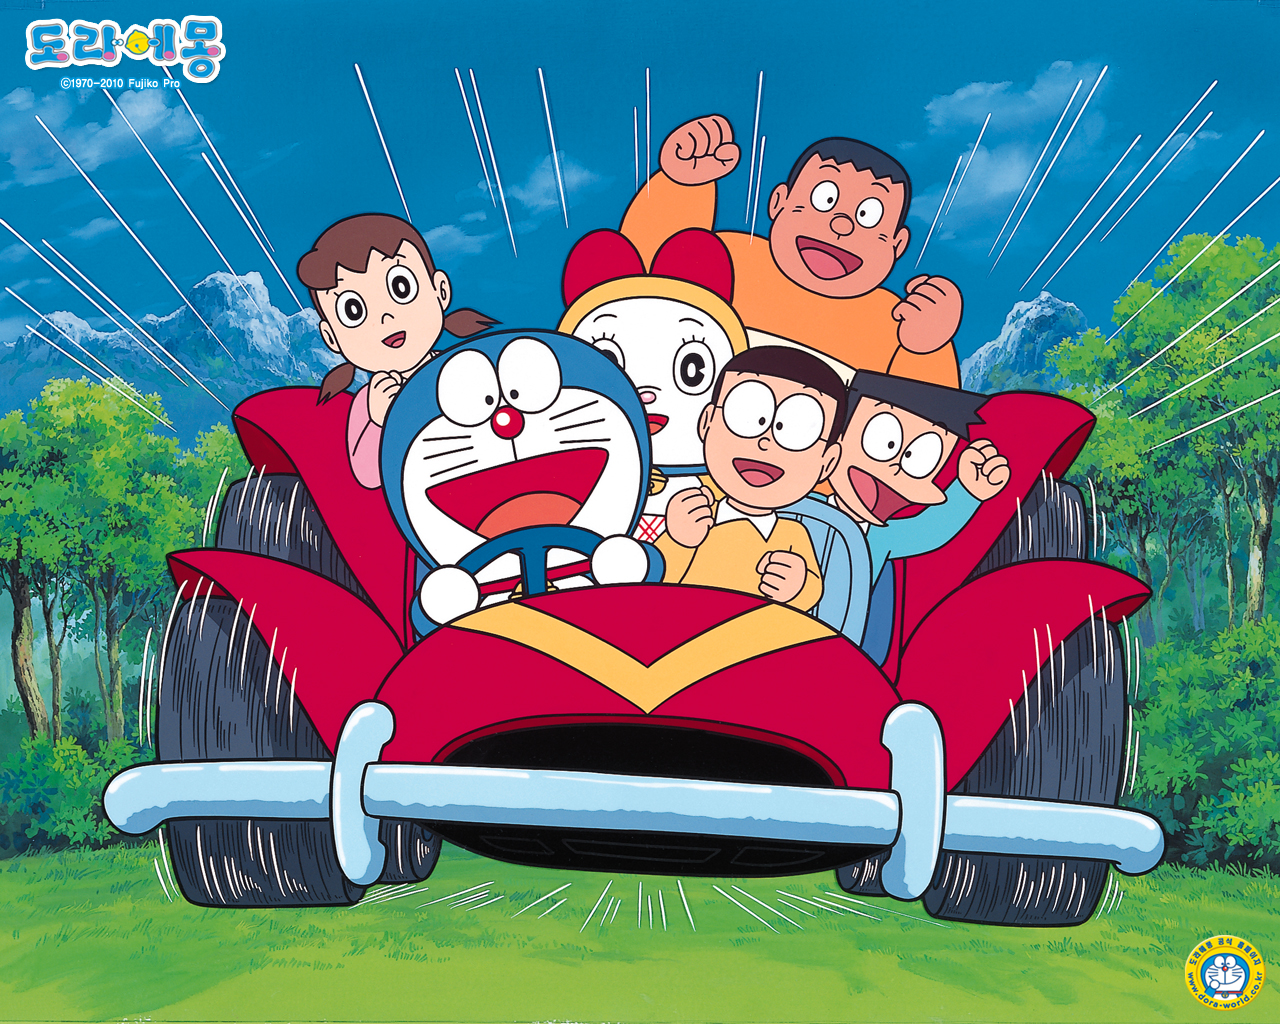 Doraemon Wallpaper: Muốn có một bức hình nền dễ thương cho thiết bị của bạn? Hãy xem bộ sưu tập hình nền Doraemon tuyệt đẹp này! Sẽ không có gì tuyệt vời hơn khi nhìn thấy chú mèo máy đáng yêu trên màn hình của bạn mỗi ngày.